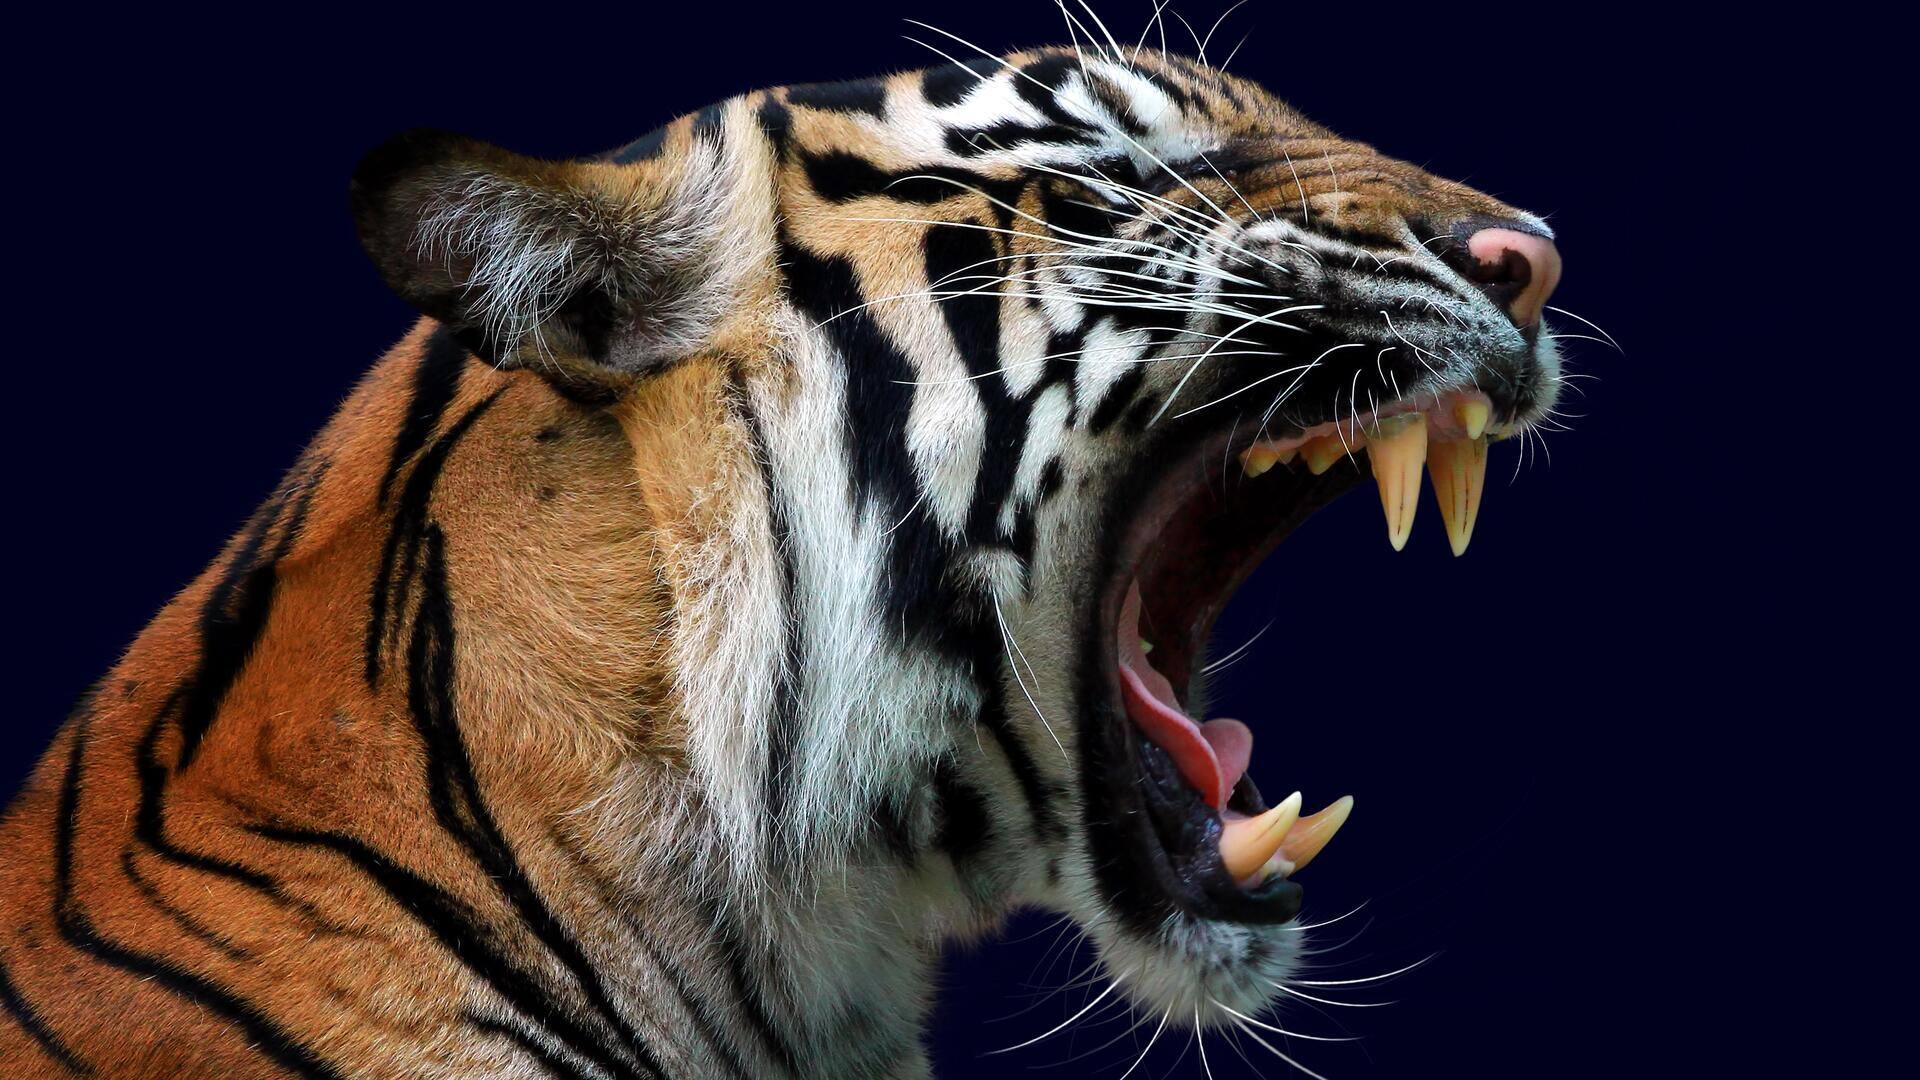 केरल: वायनाड में आदमखोर बाघ को देखते ही गोली मारने का आदेश, तैयारी शुरू